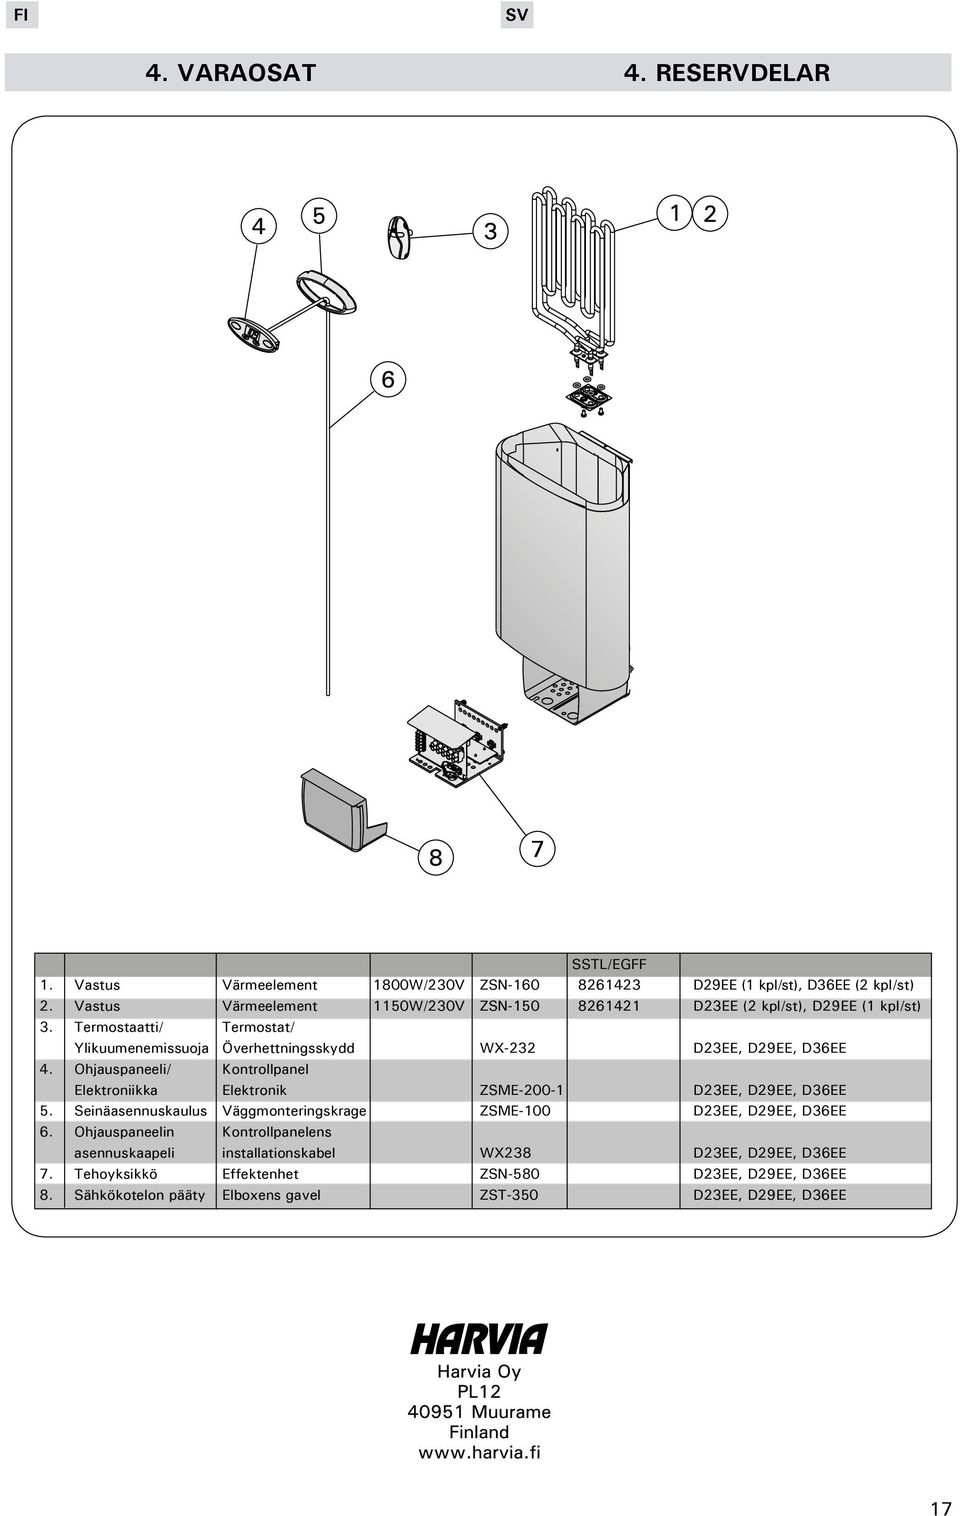 Termostaatti/ Termostat/ Ylikuumenemissuoja Överhettningsskydd WX-232 D23EE, D29EE, D36EE 4.